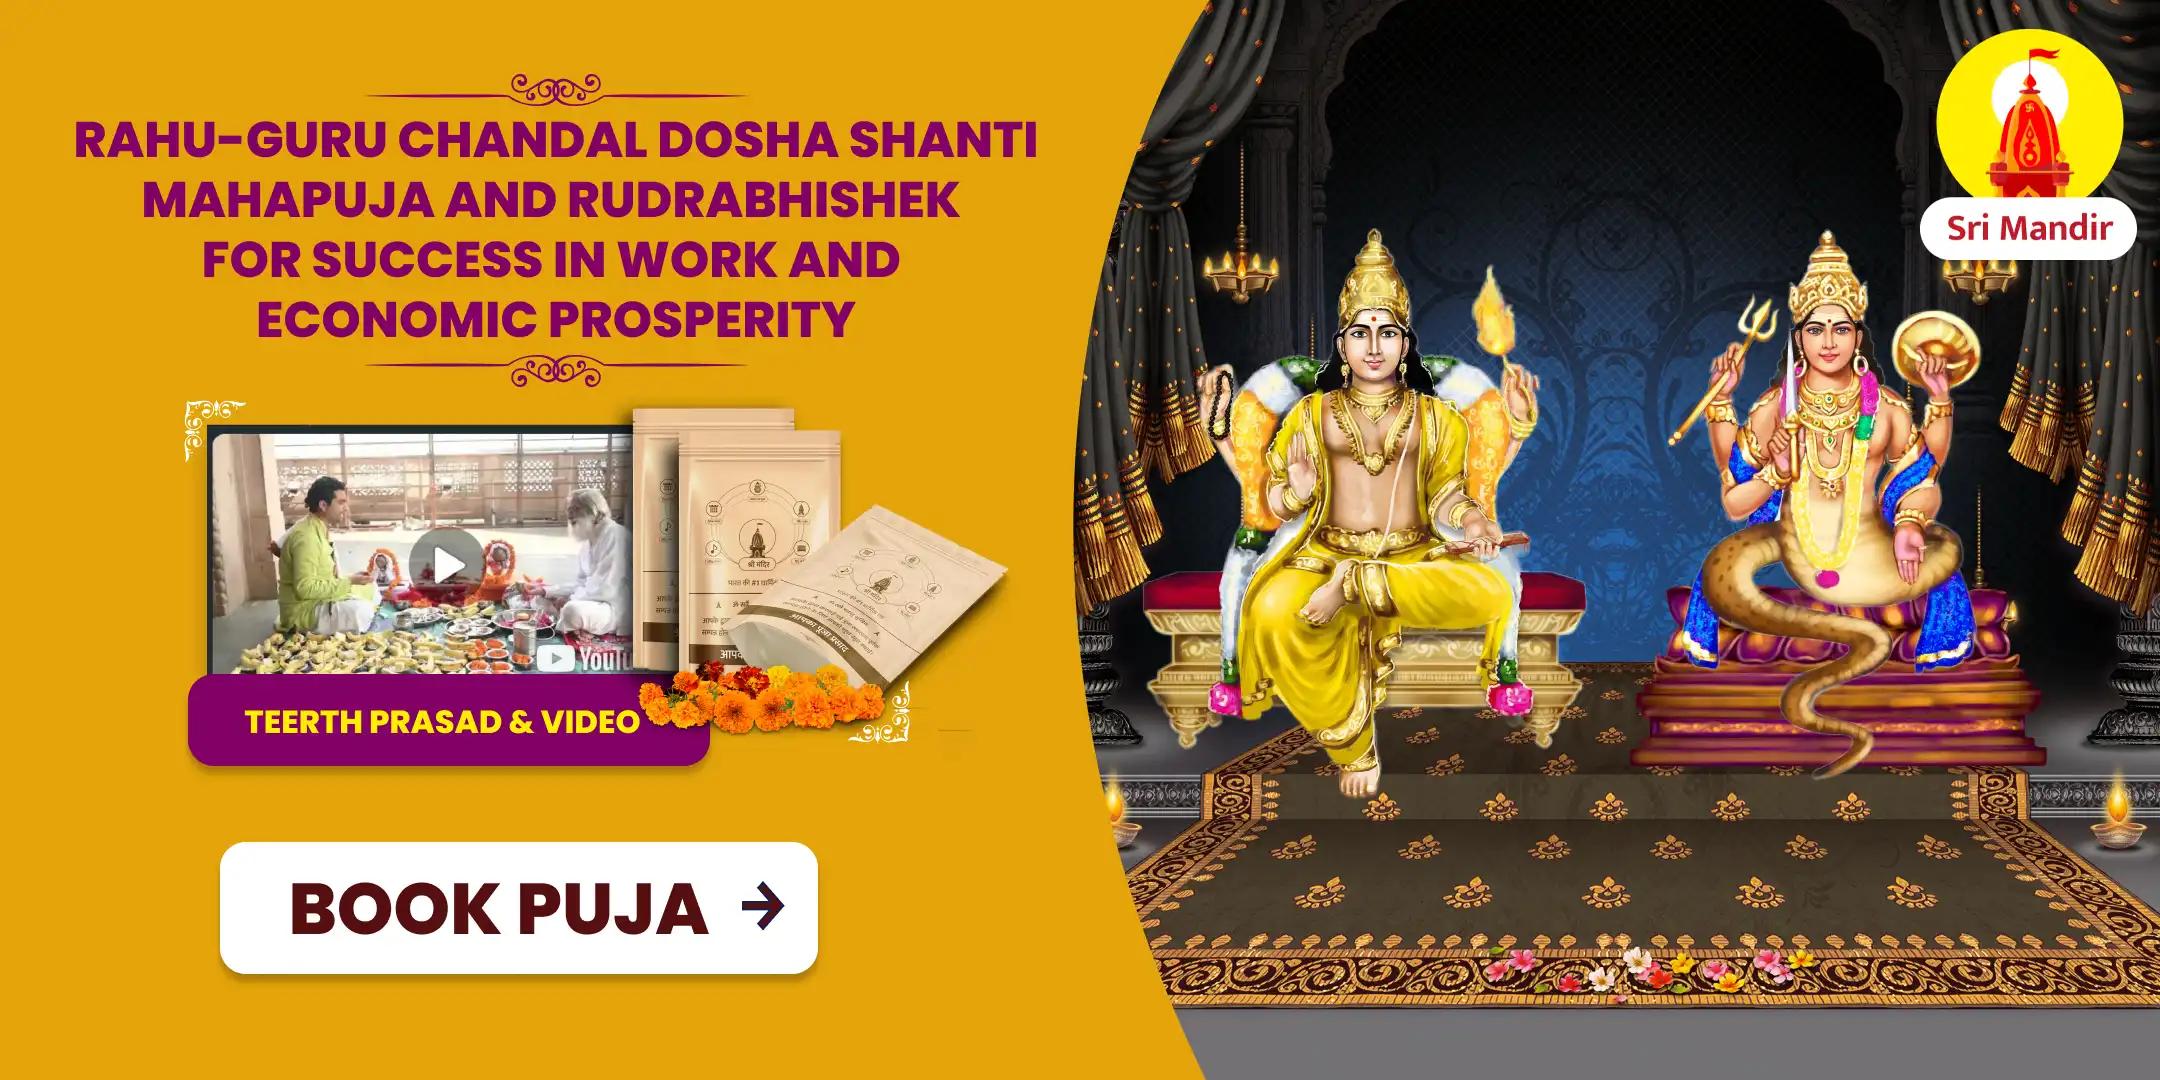 Rahu-Guru Chandal Dosha Shanti Mahapuja and Rudrabhishek For Success in Work and Economic Prosperity